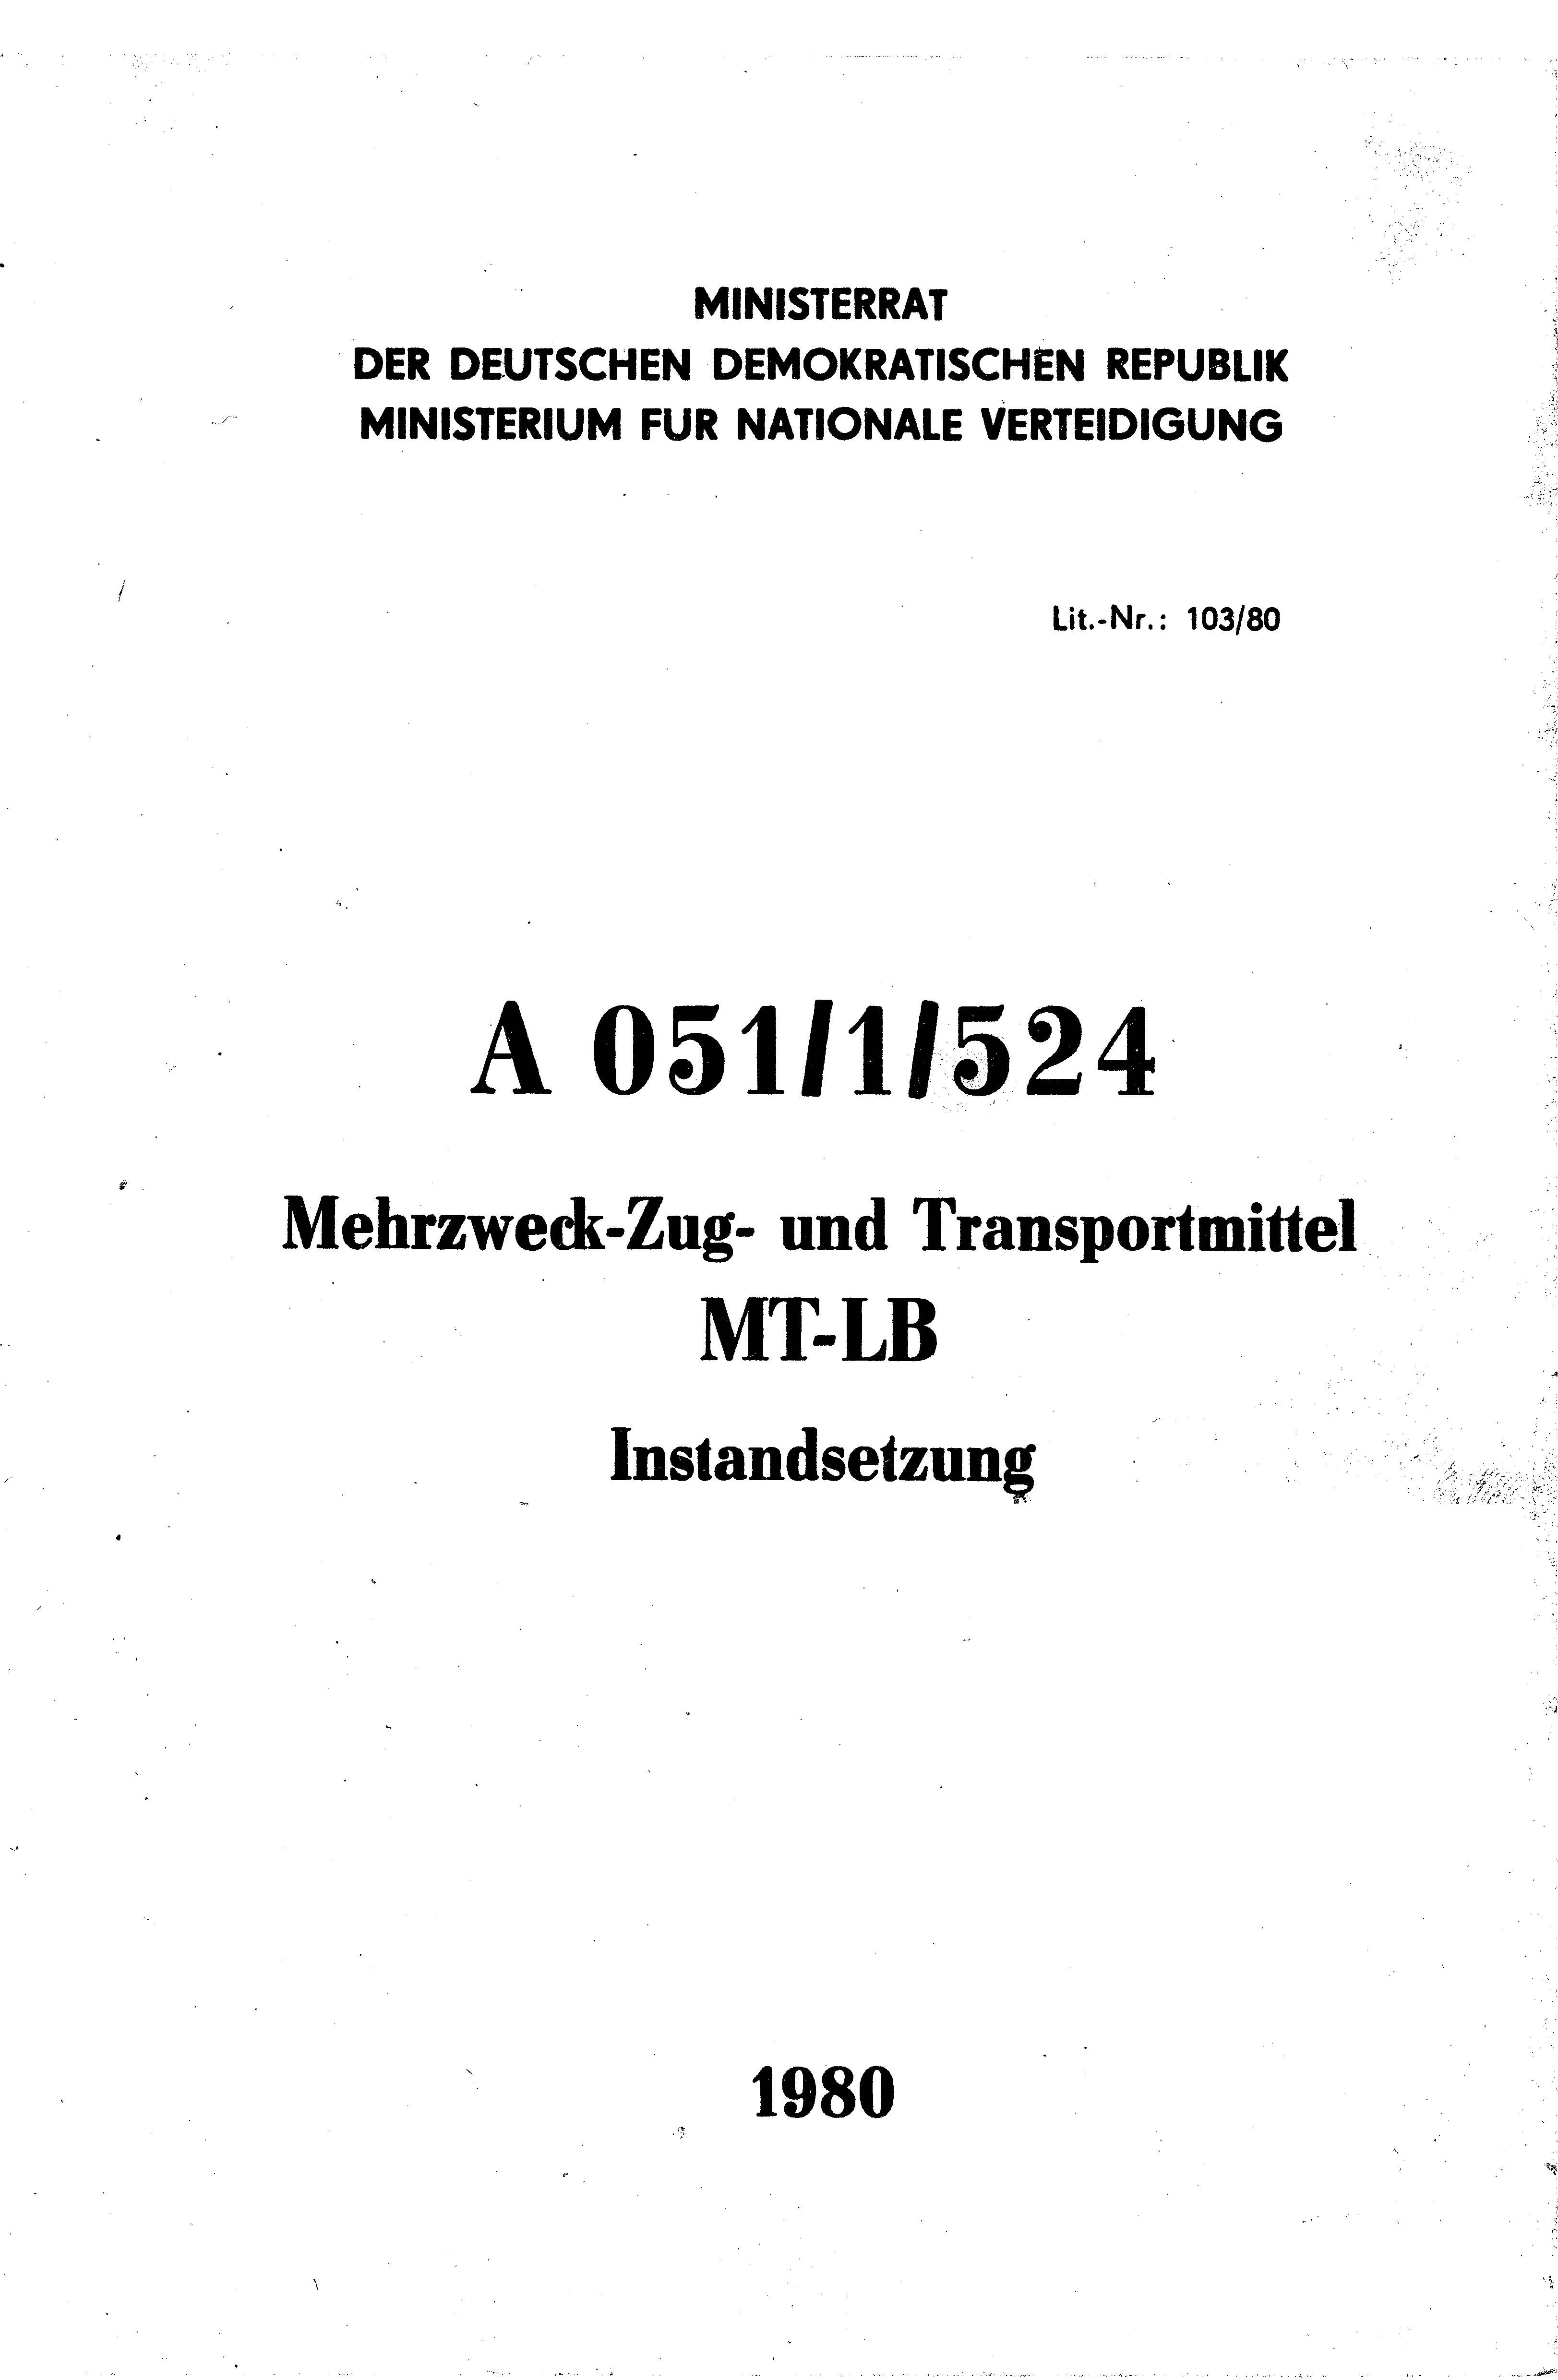 a051-1-524-mt-lb-instandsetzung-1980-deckblatt.jpg